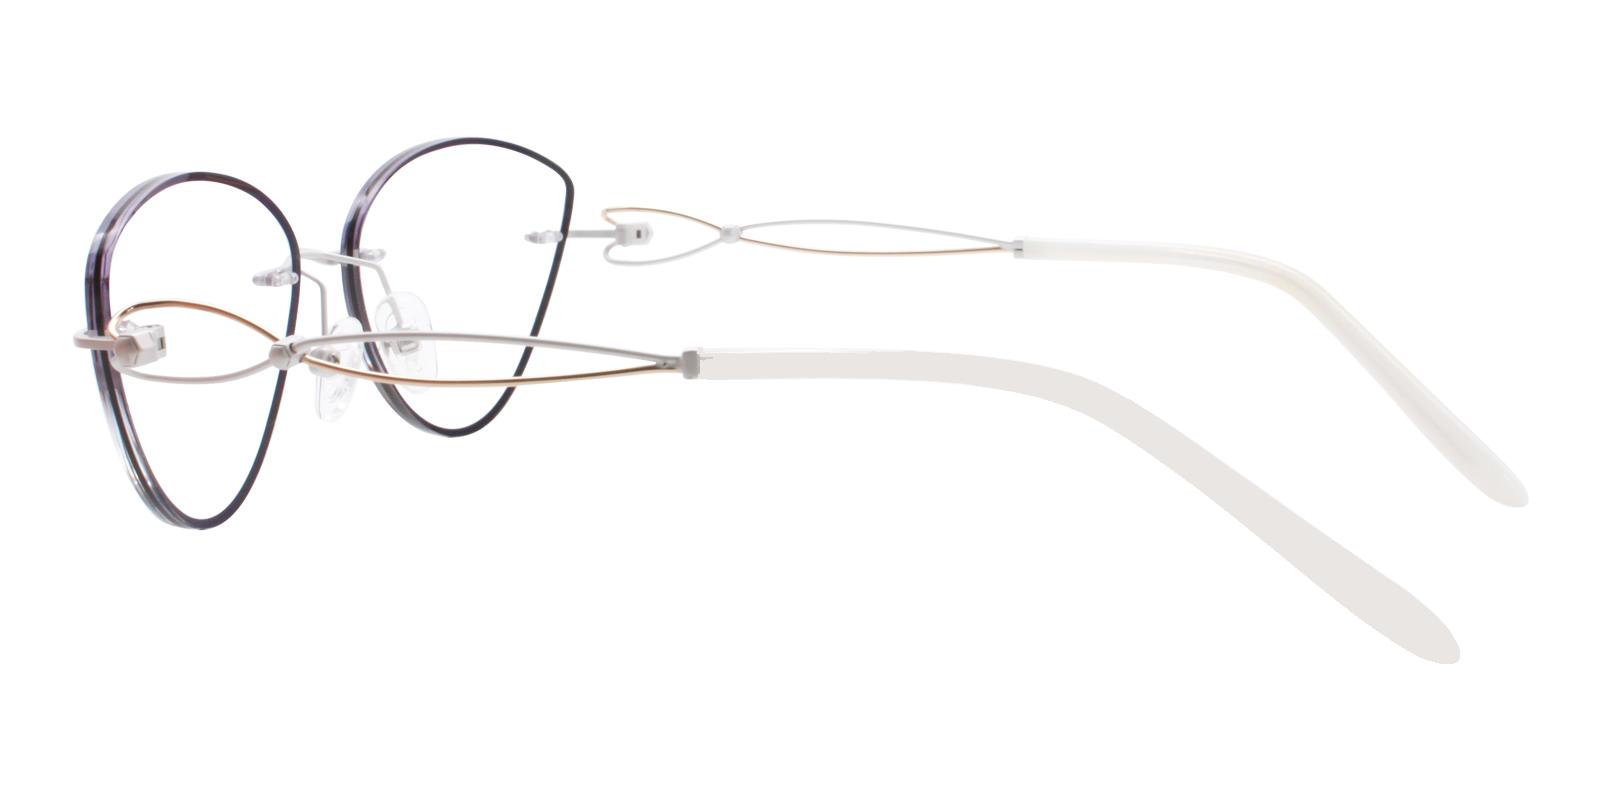 Kaylee Black Titanium NosePads , Eyeglasses Frames from ABBE Glasses